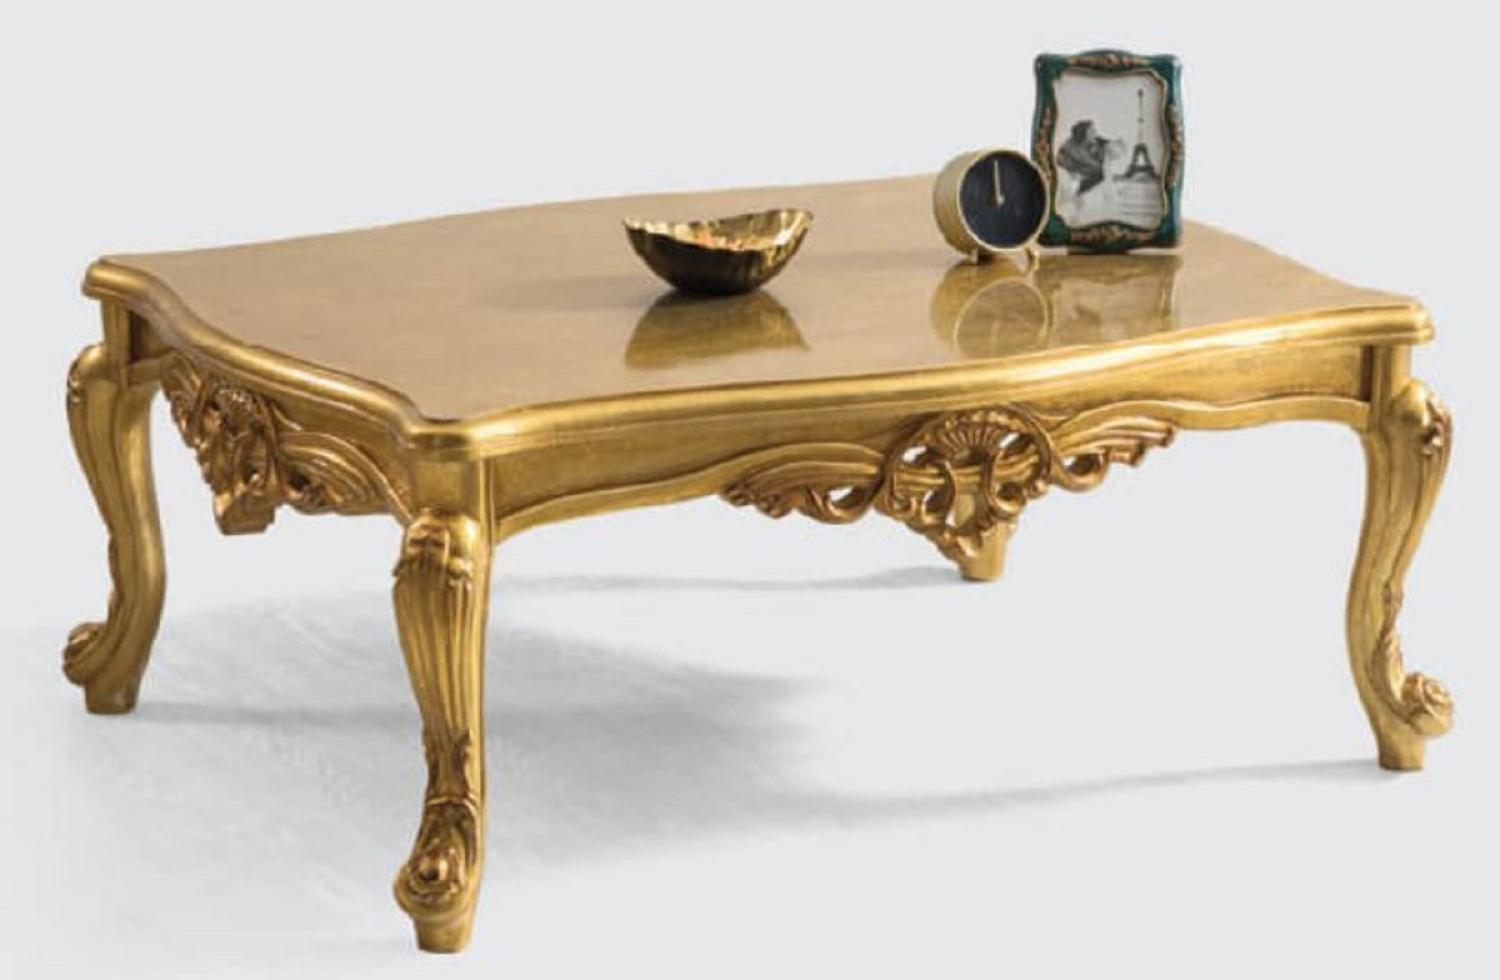 Casa Padrino Luxus Barock Couchtisch Gold 120 x 90 x H. 55 cm - Handgefertigter Massivholz Wohnzimmertisch im Barockstil - Prunkvolle Barock Möbel Bild 1